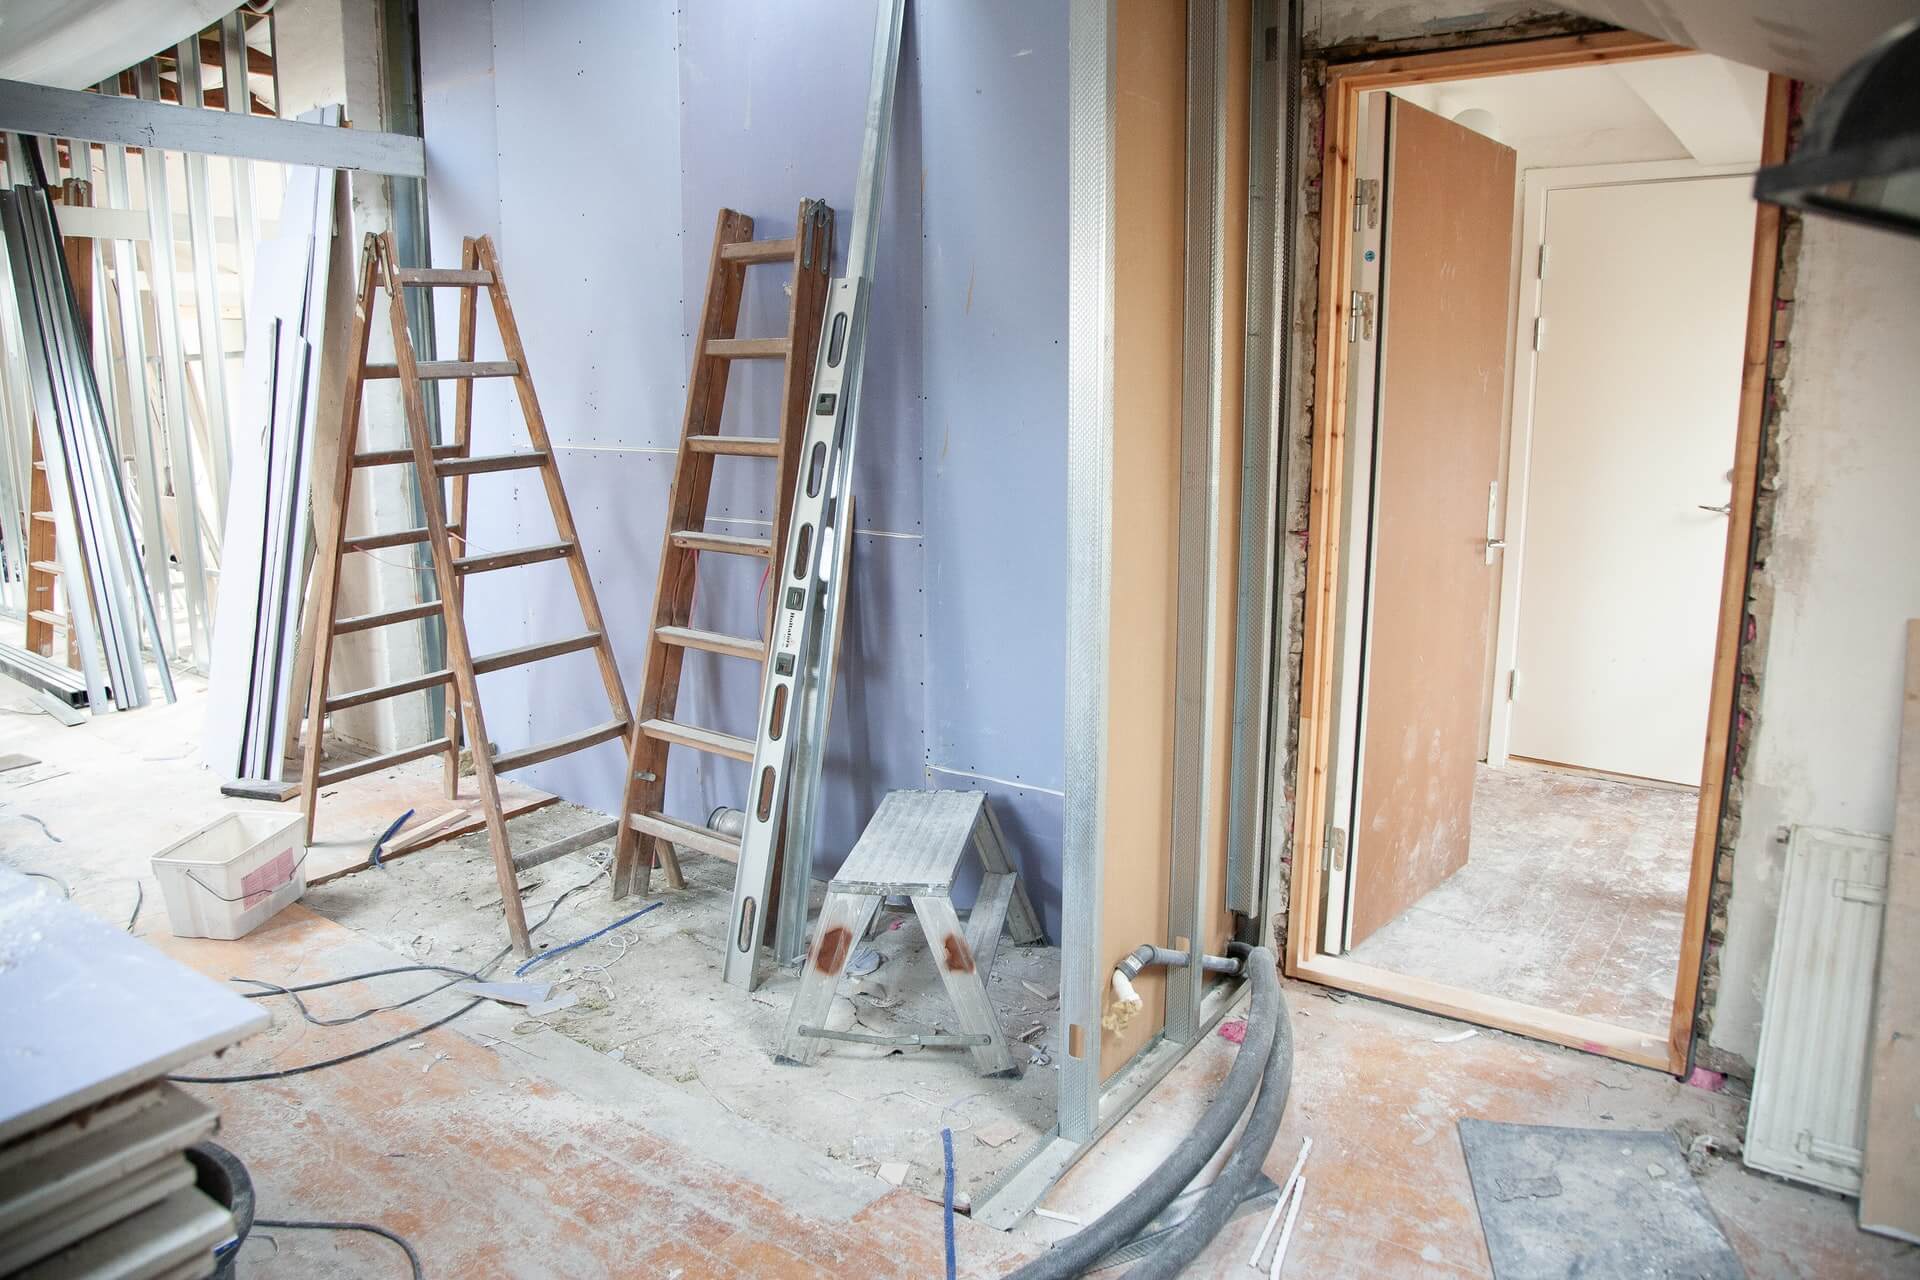 una stanza in rifacimento con scala di legno appoggiata al muro e strumenti utilizzati per la ristrutturazione casa sul pavimento